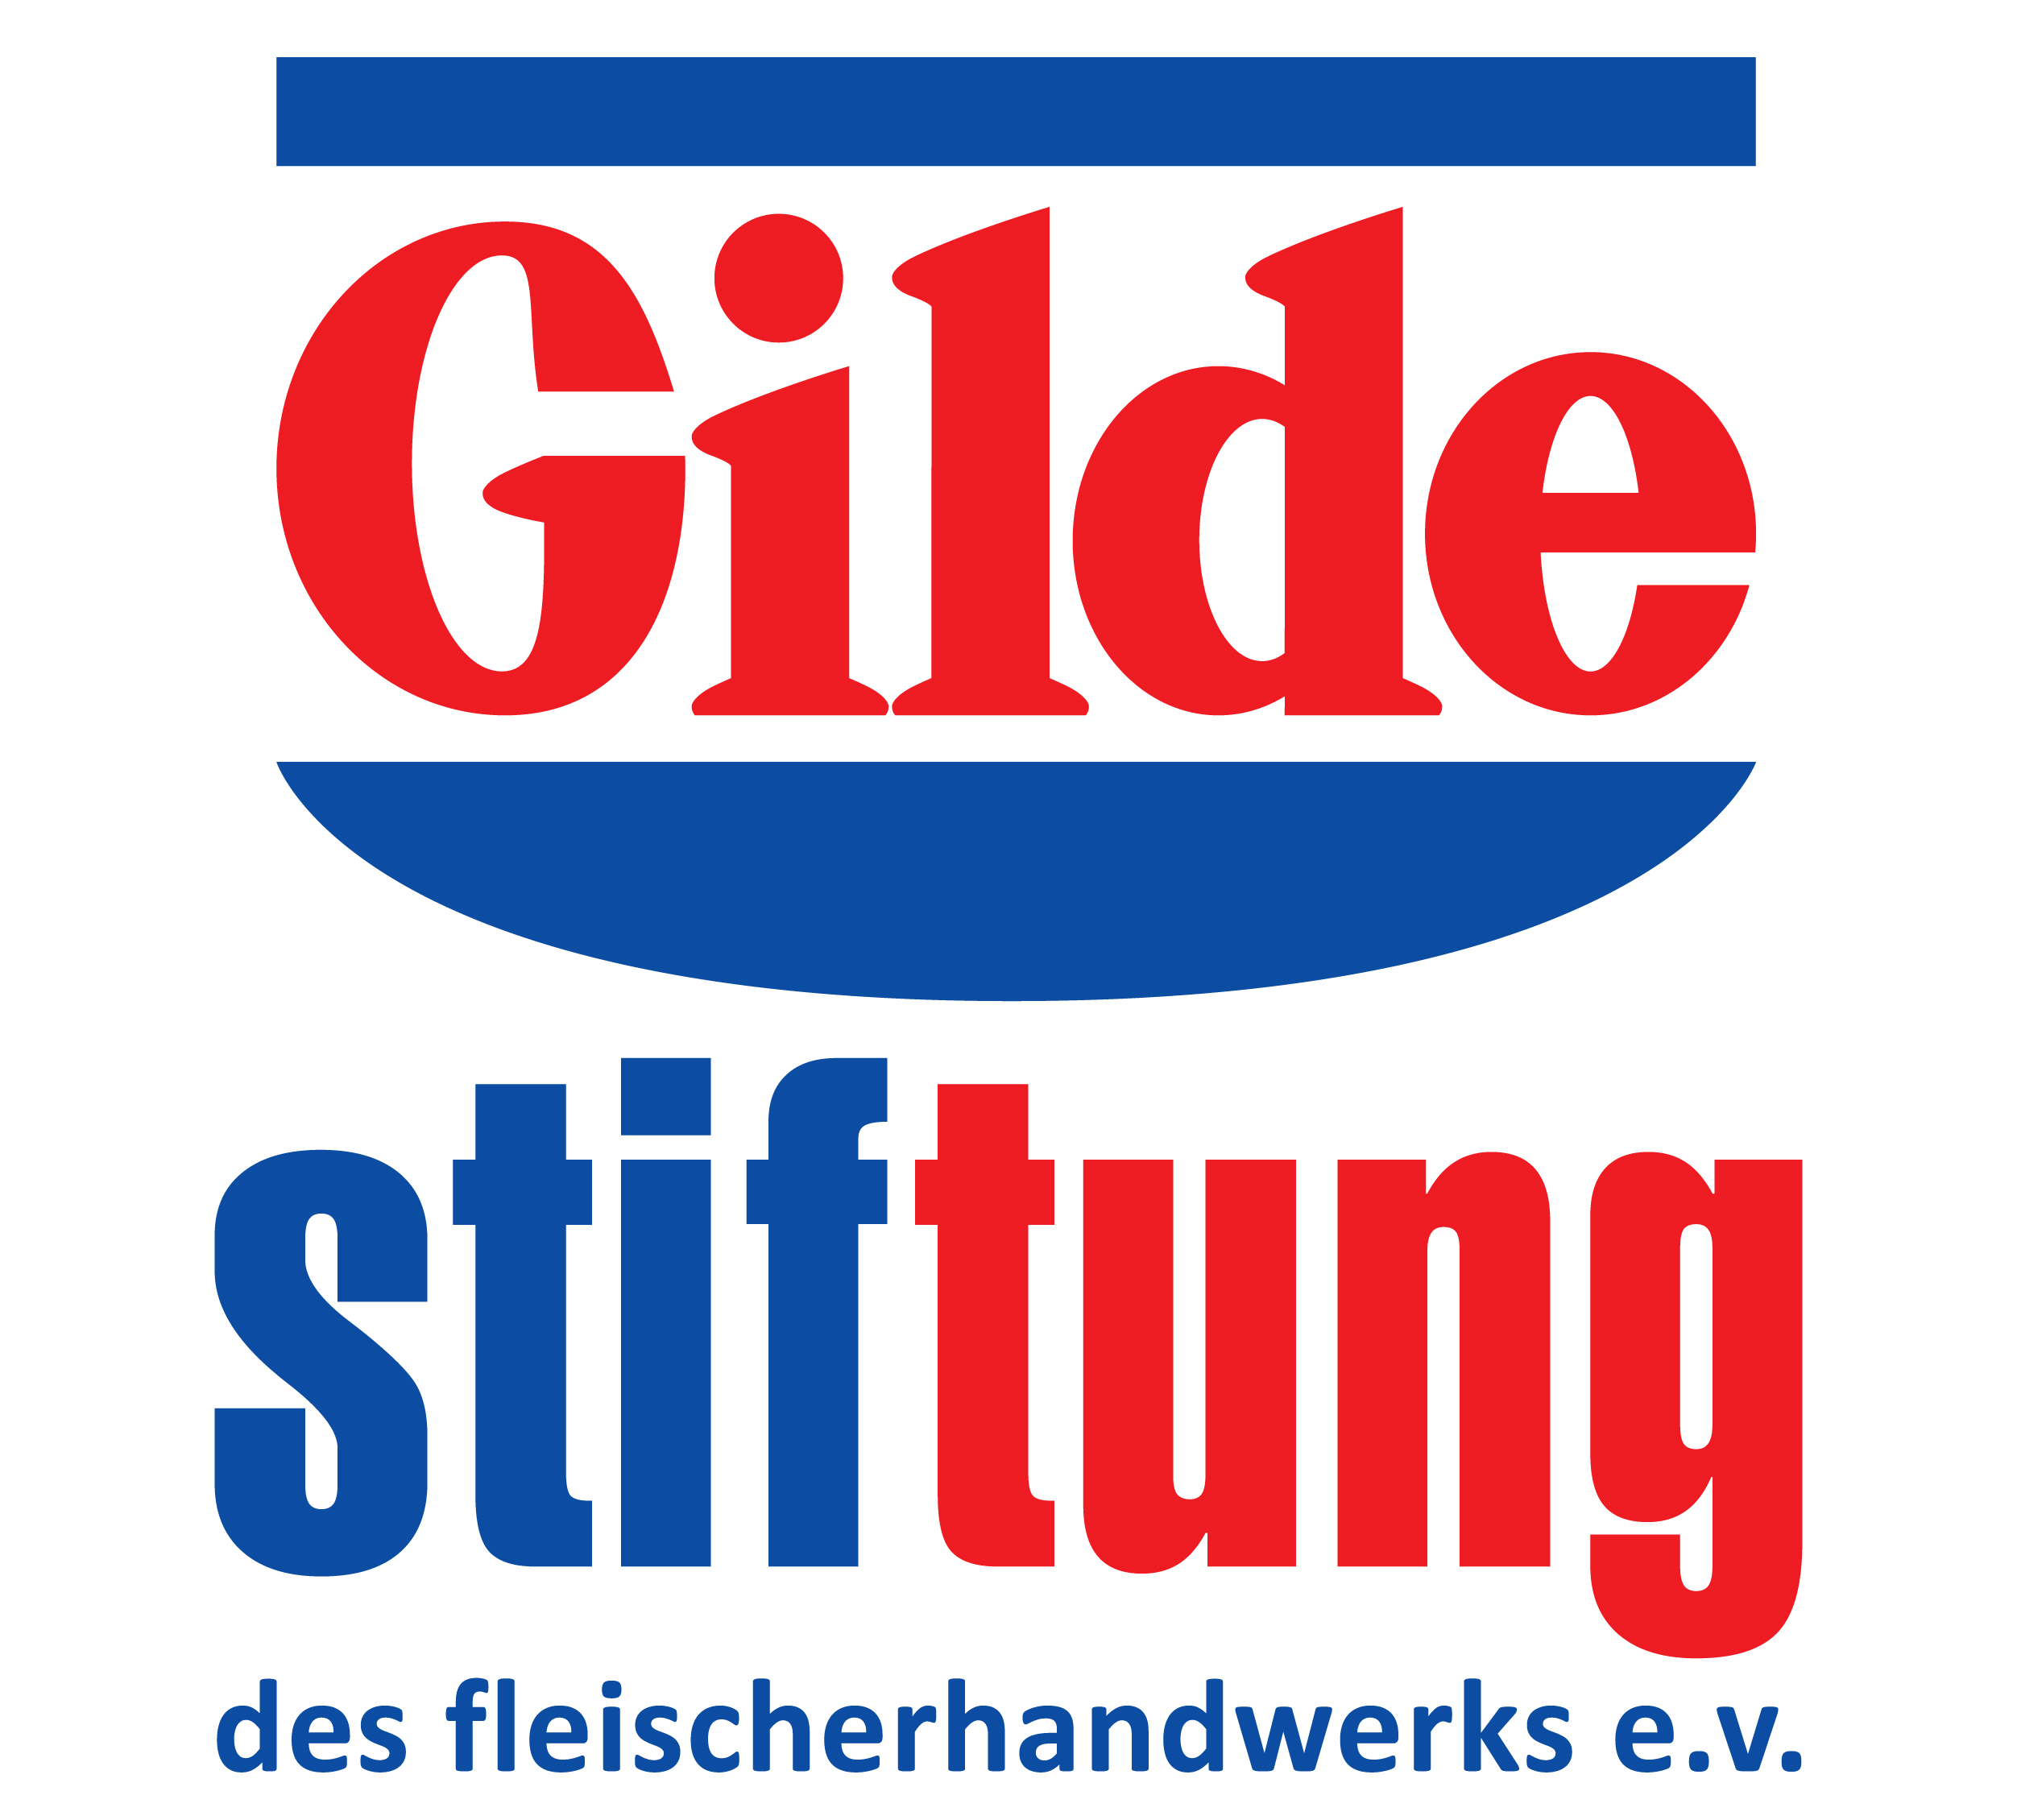 Logo der Gilde Stiftung des Fleischerhandwerks e.v. in blau und rot